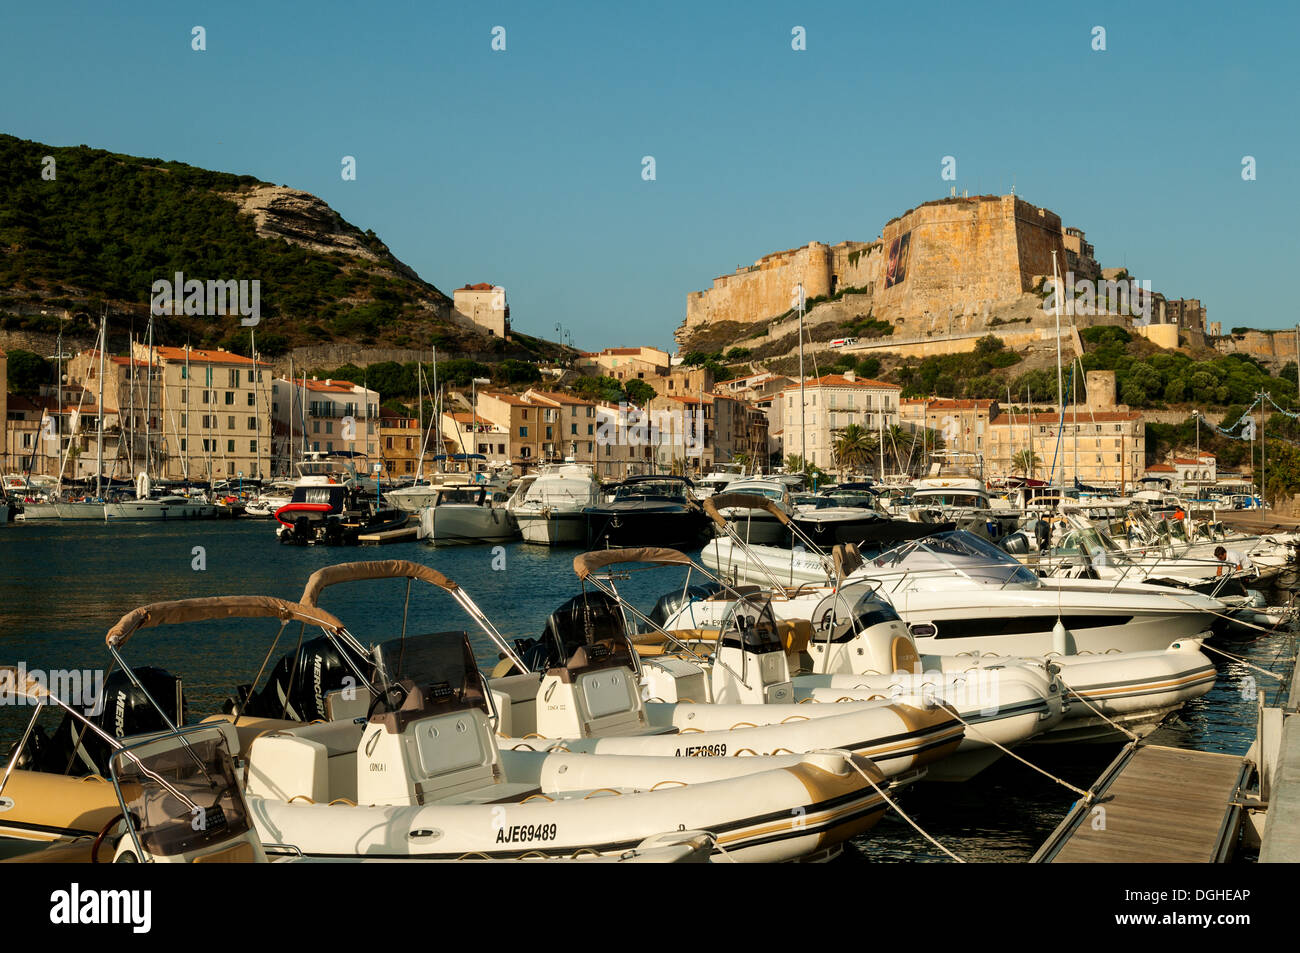 Bastion de l'Ancien Port de Bonifacio, Bonifacio, Corse du Sud, France Banque D'Images